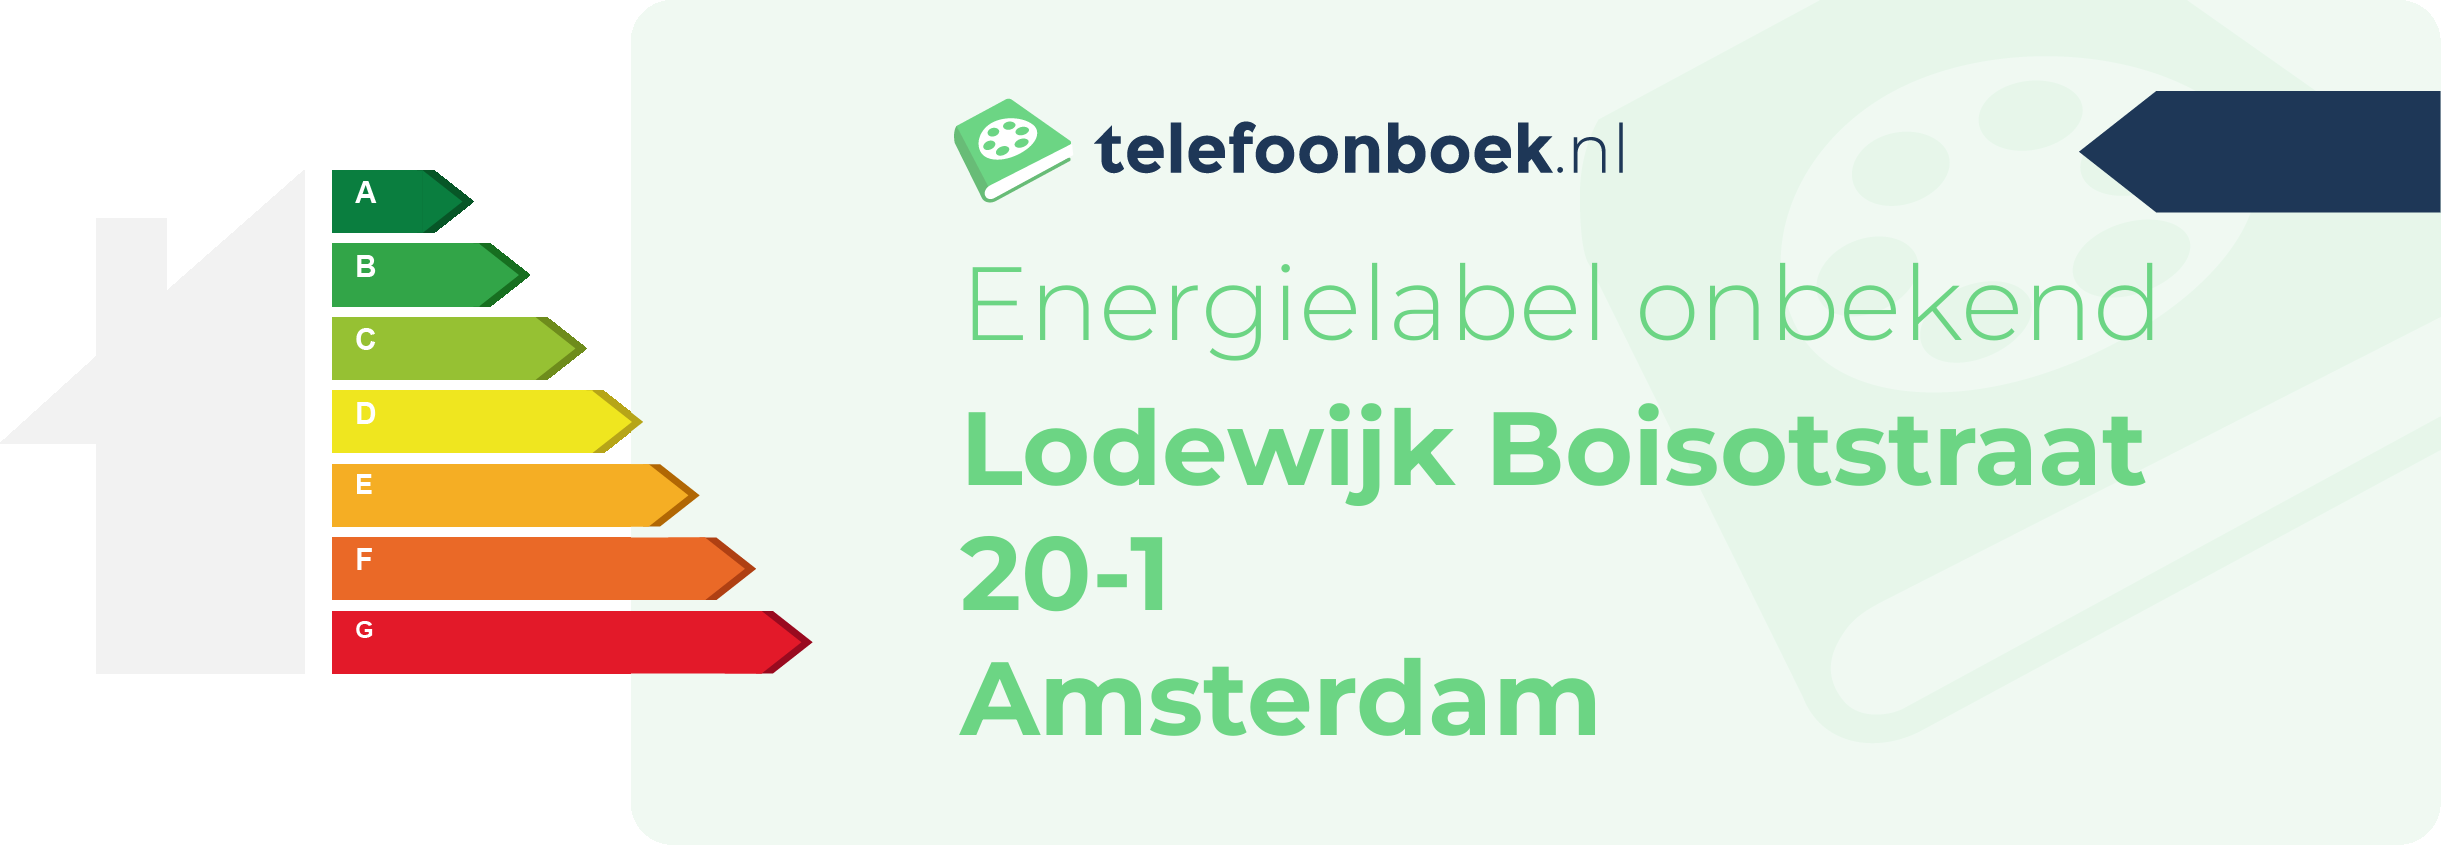 Energielabel Lodewijk Boisotstraat 20-1 Amsterdam